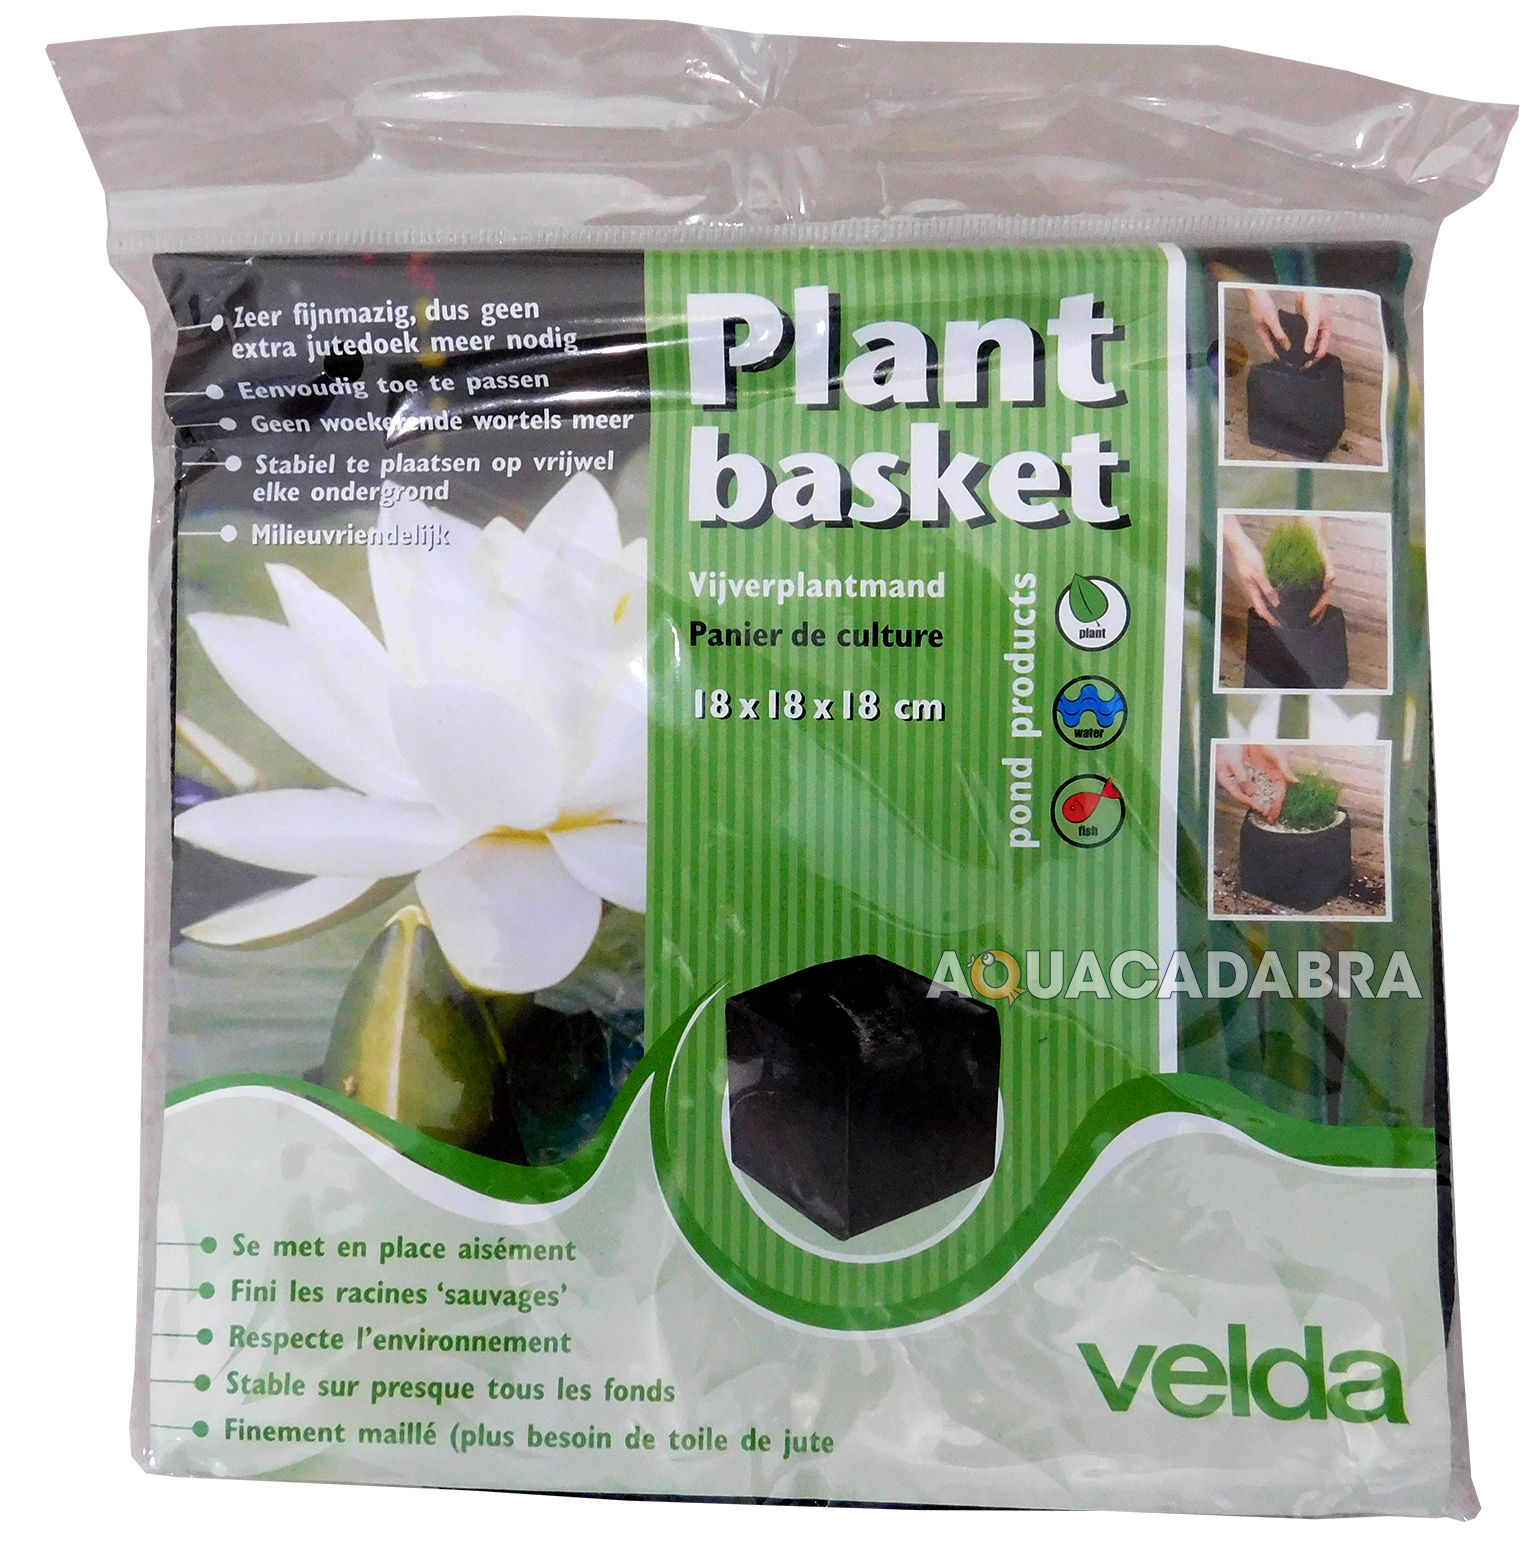 VELDA WOVEN FLEXIBLE PLANT BASKET ROUND SQUARE GARDEN POND WATER